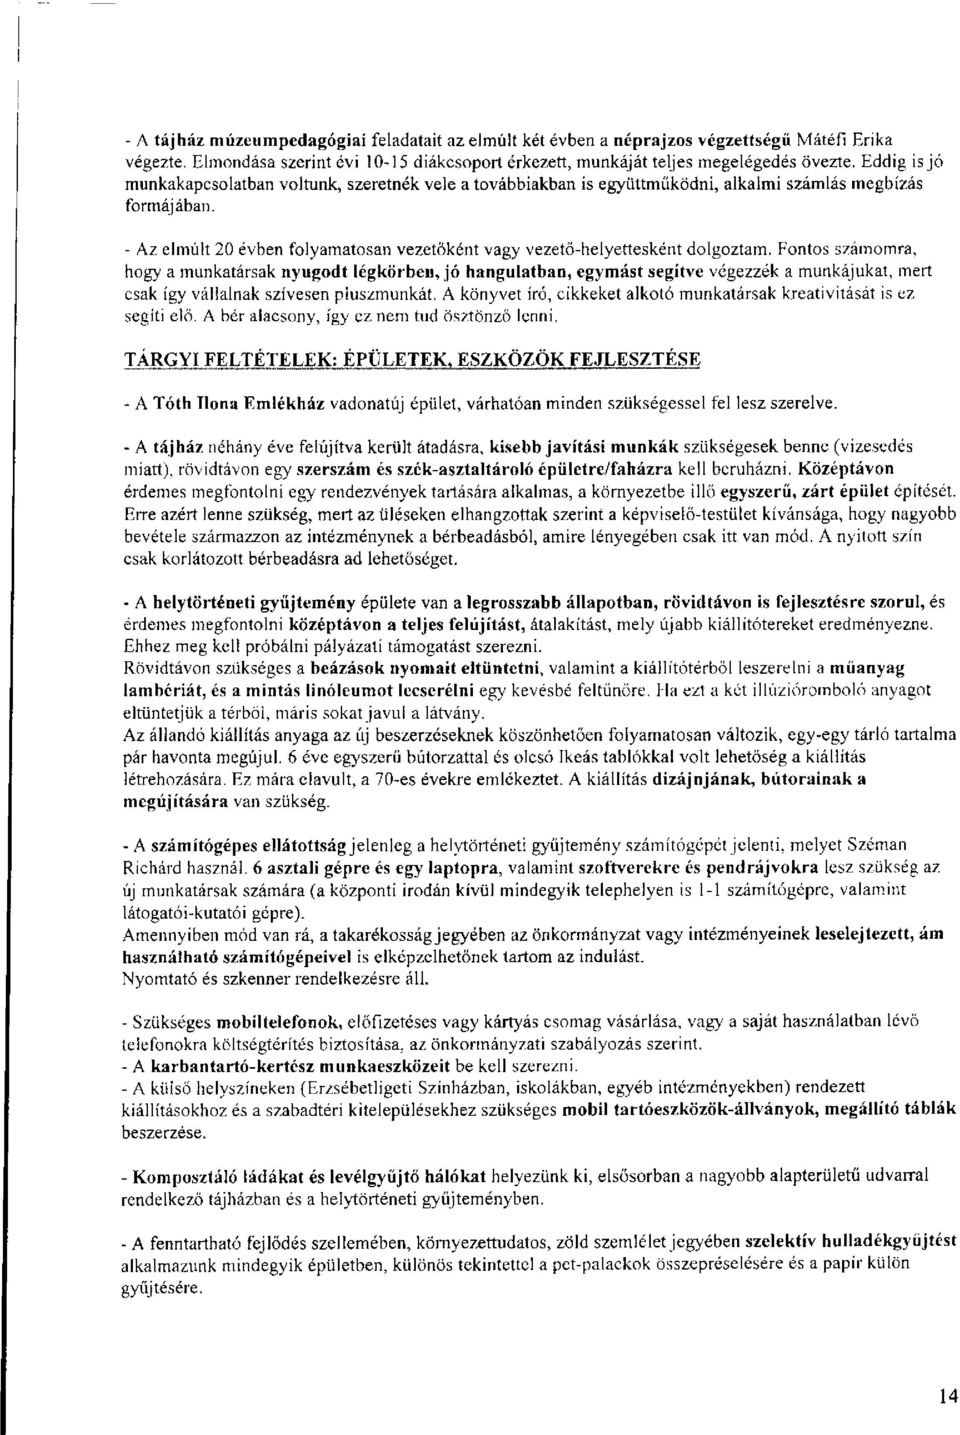 Tárgy: Döntés a Kertvárosi Helytörténeti és Emlékezet Központ magasabb  vezetői megbízásáról. Tisztelt Képviselő-testület! - PDF Ingyenes letöltés